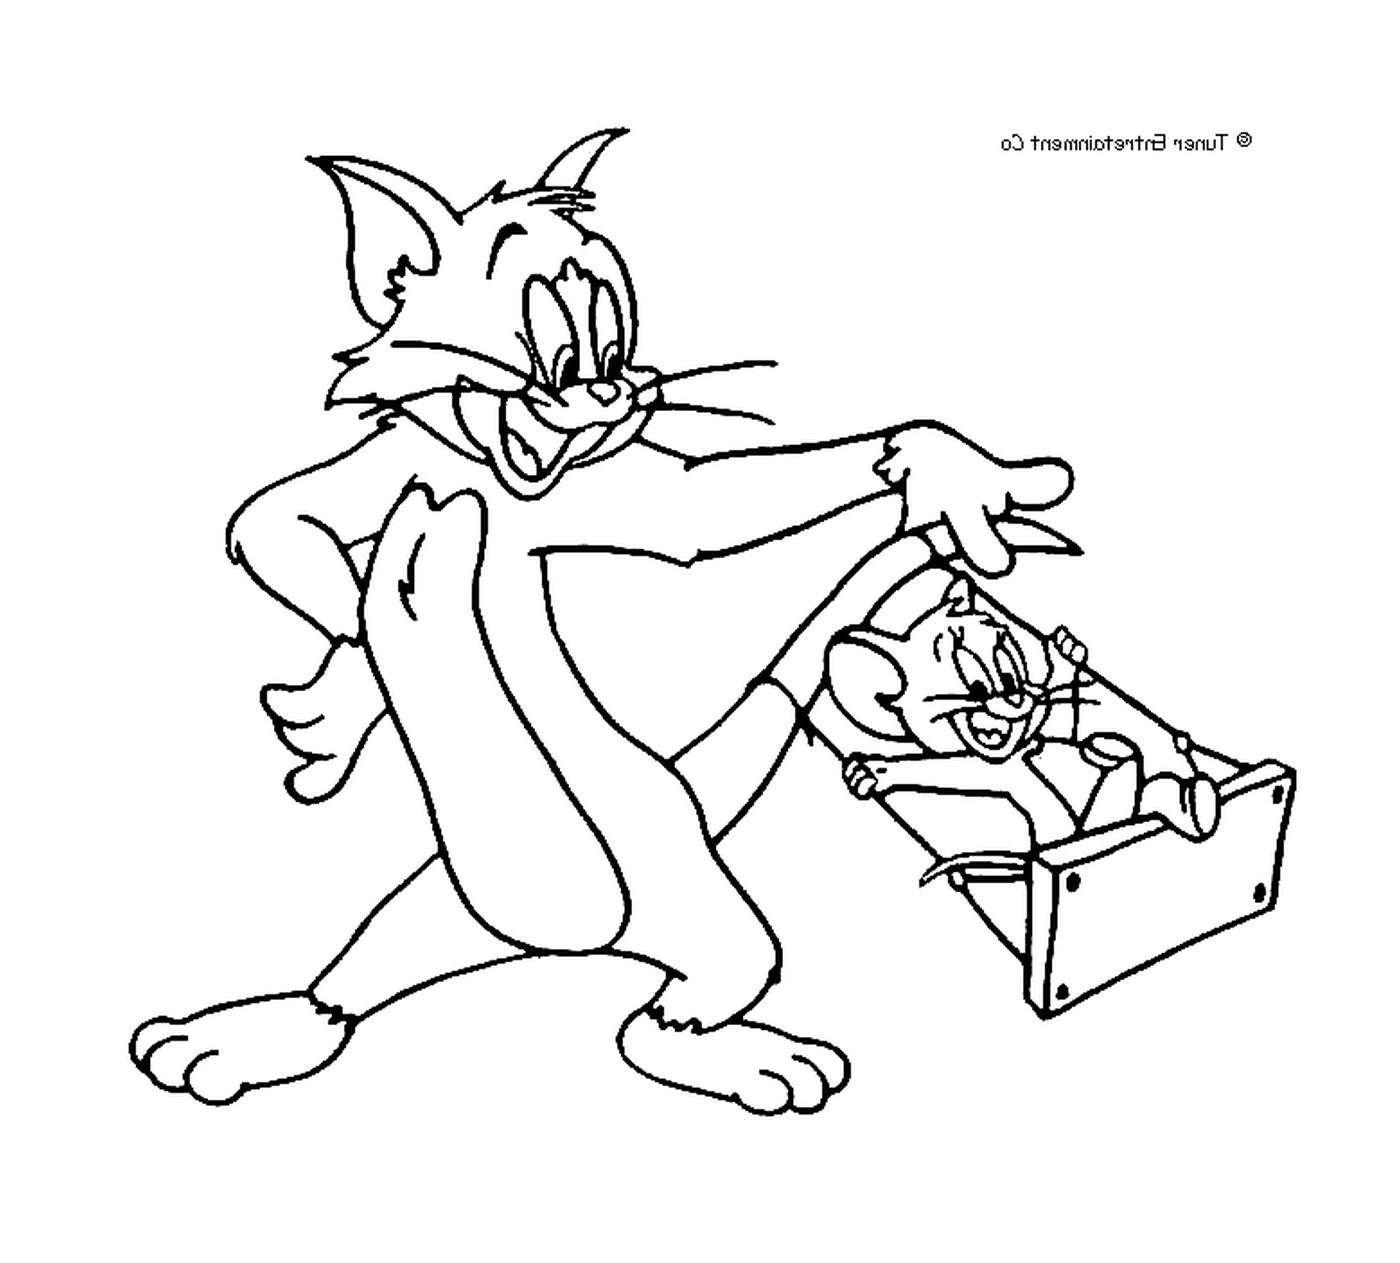  Jerry lança Tom em um balanço 